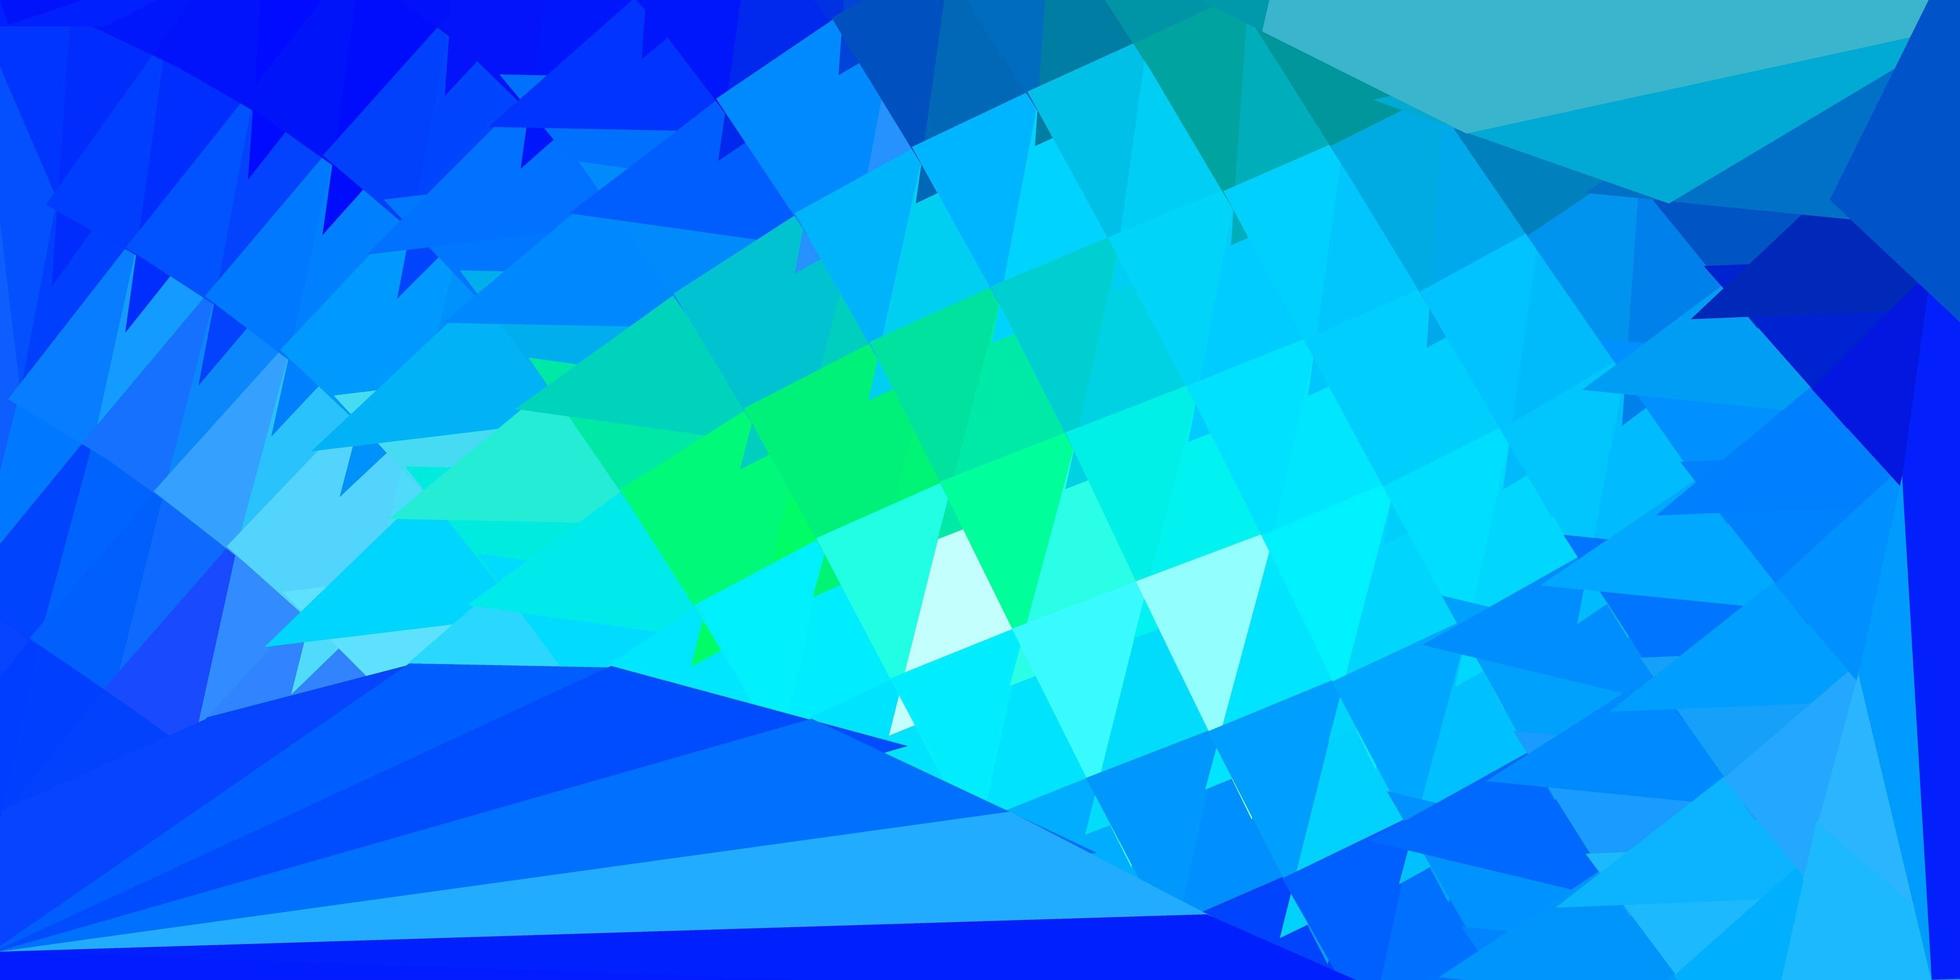 textura de triângulo poli vector azul claro e verde.